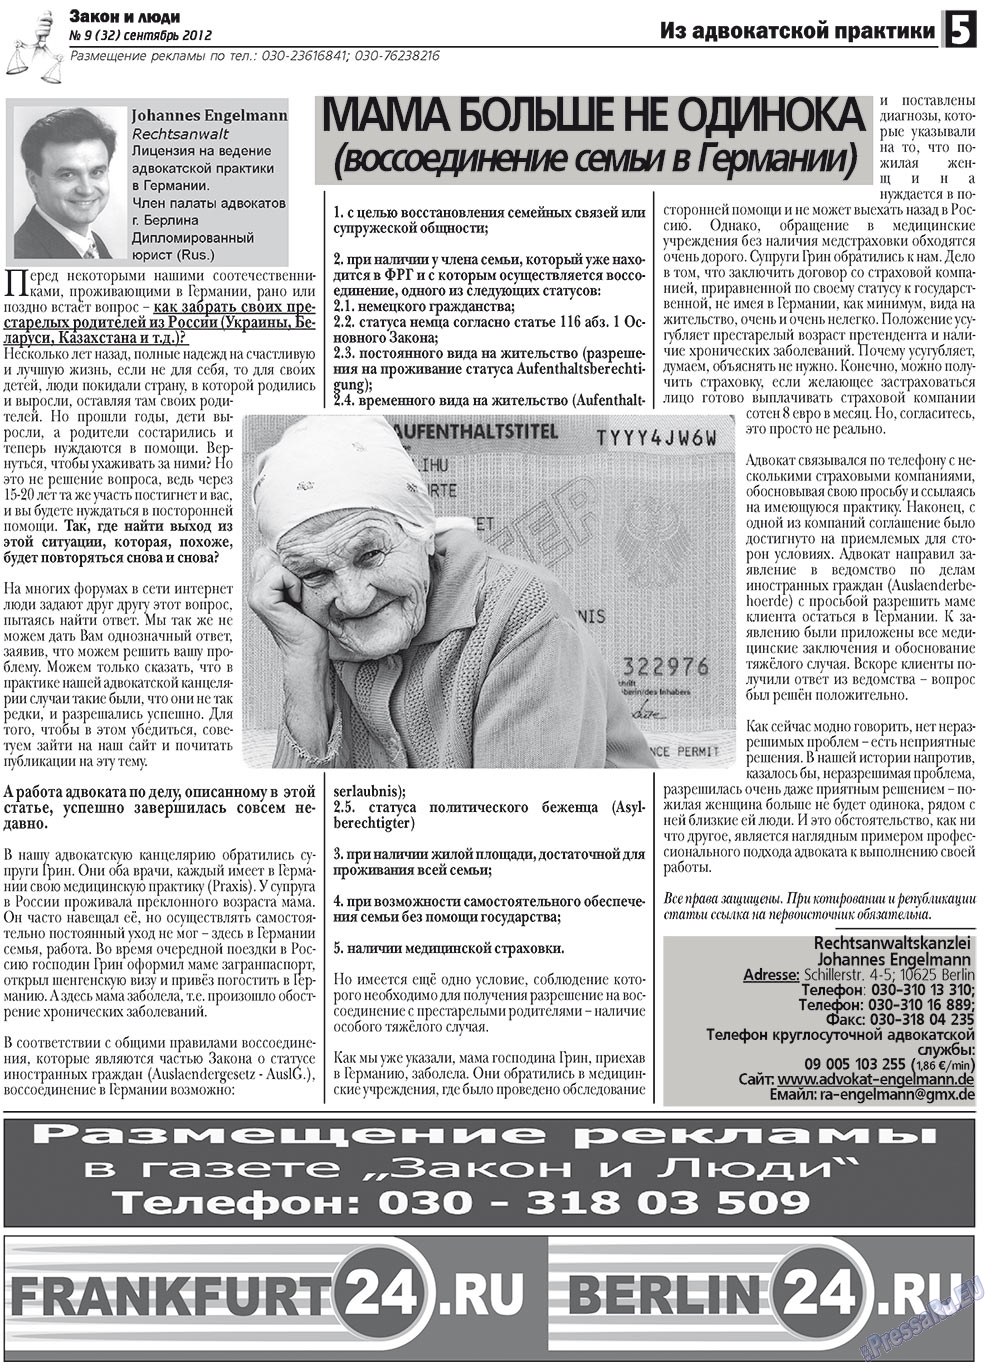 Закон и люди, газета. 2012 №9 стр.5